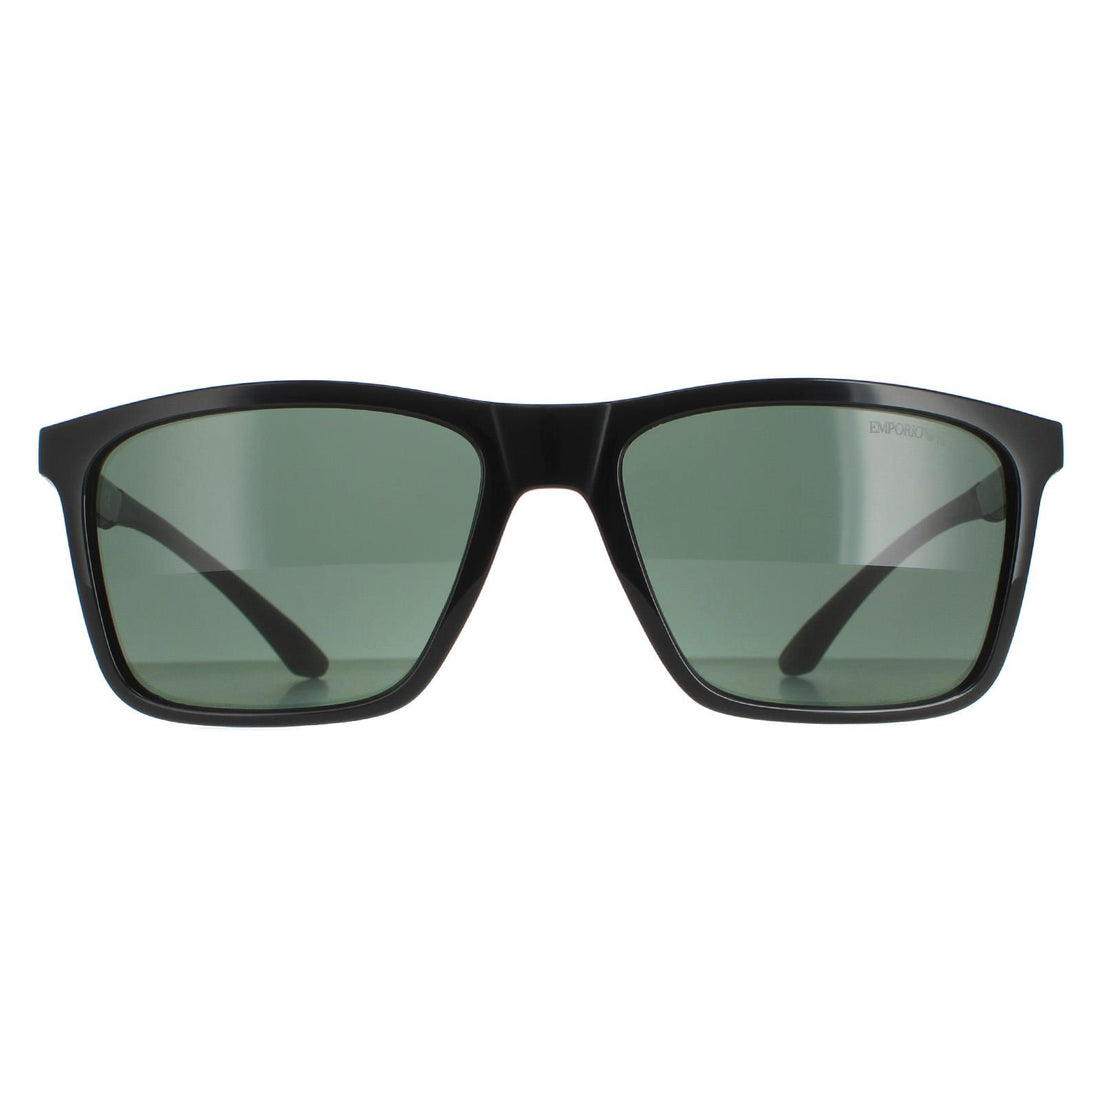 Emporio Armani EA4170 Sunglasses Black / Dark Green